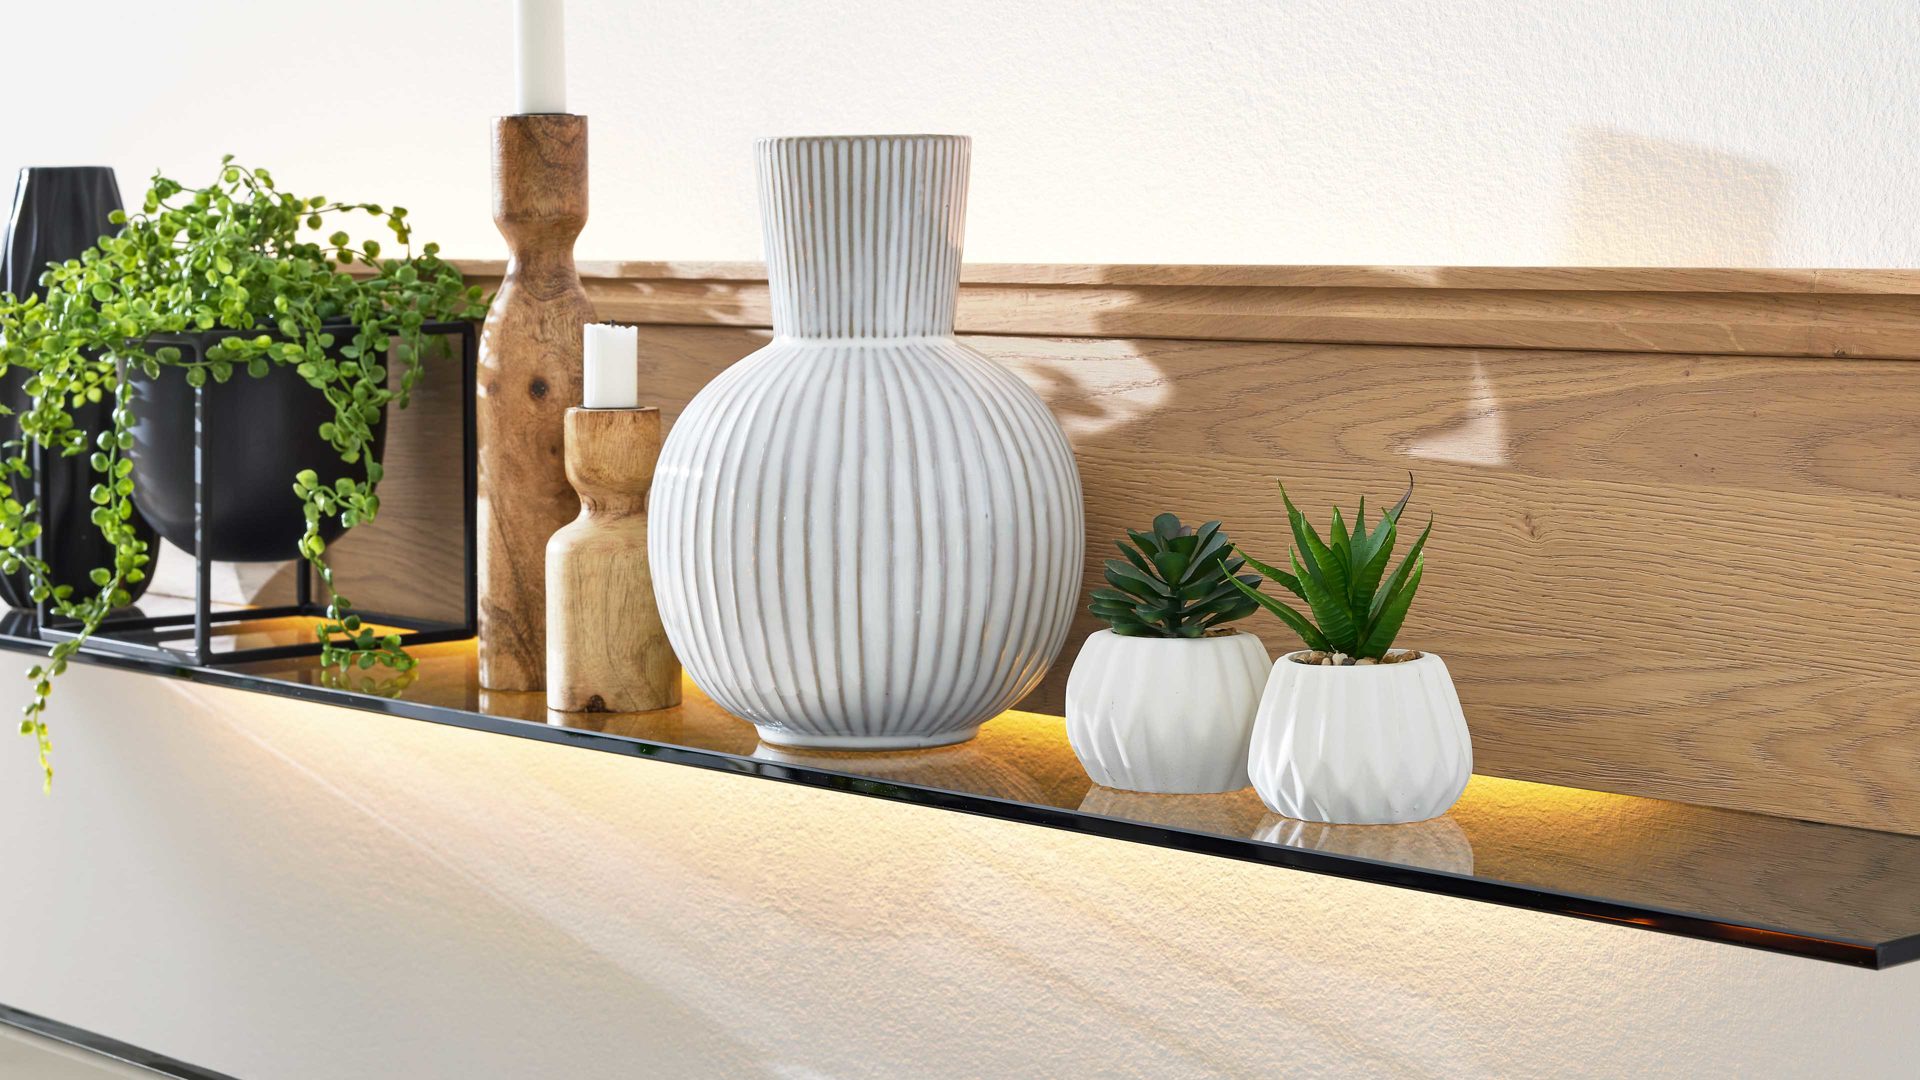 Möbelbeleuchtung Interliving aus Kunststoff in Weiß Interliving Wohnzimmer Serie 2025 - LED-Profilbeleuchtung Länge ca. 100 cm